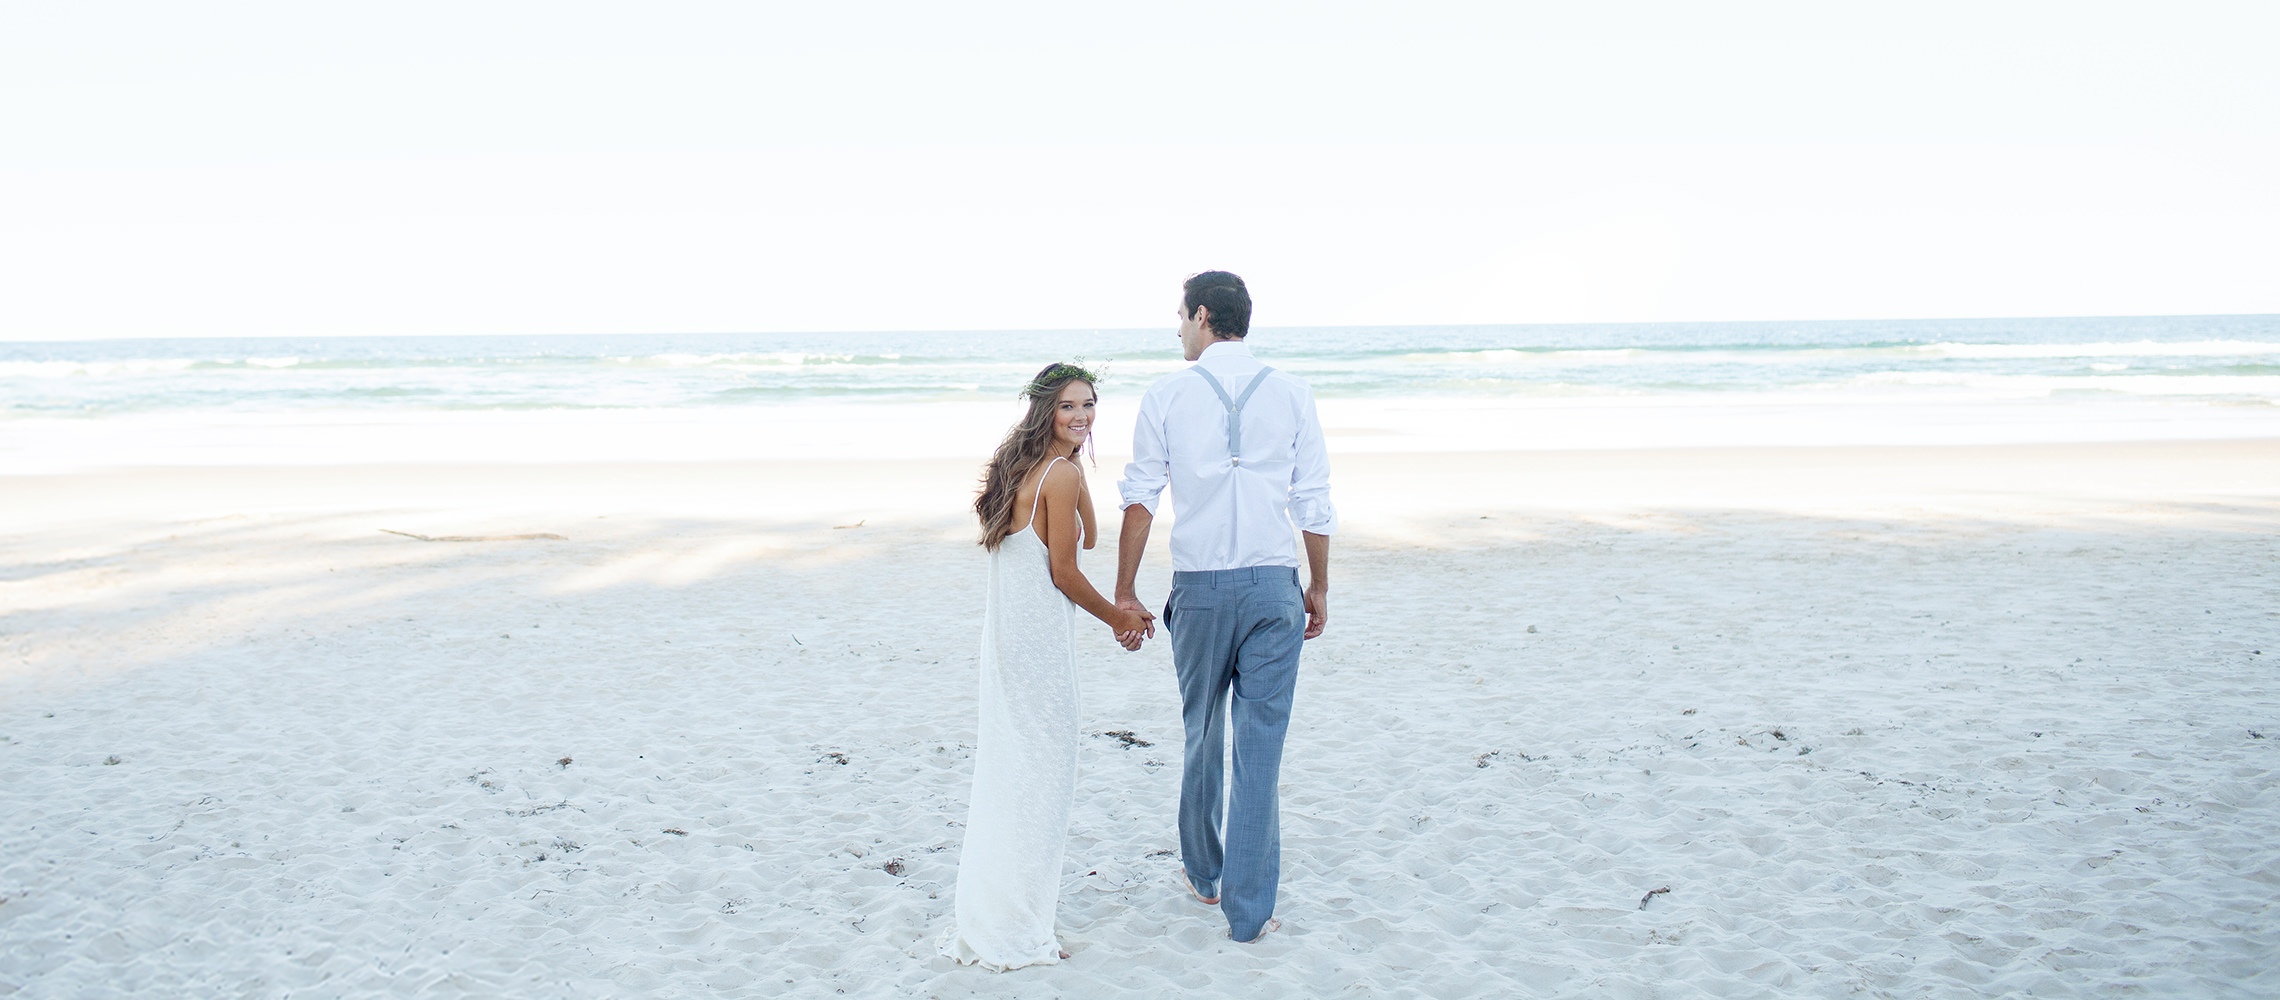 Recién casados caminando por la playa de arena blanca.